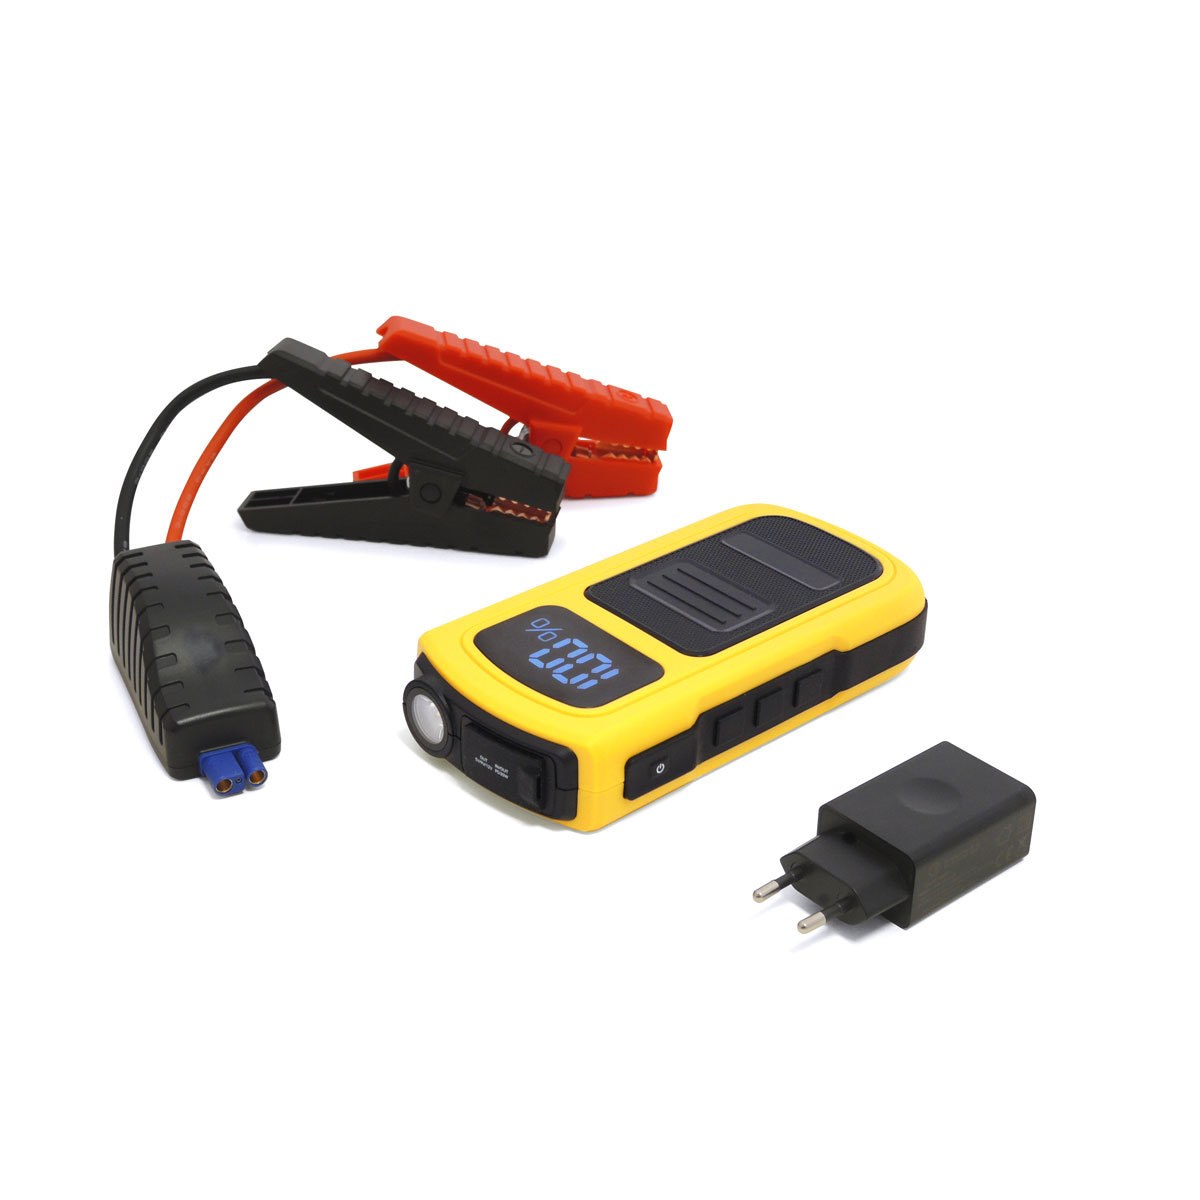 Avviatore d'Emergenza a Litio e Caricabatteria Smartphone -I-Starter 2.9  -12V 12000 mAh - GMA Batterie